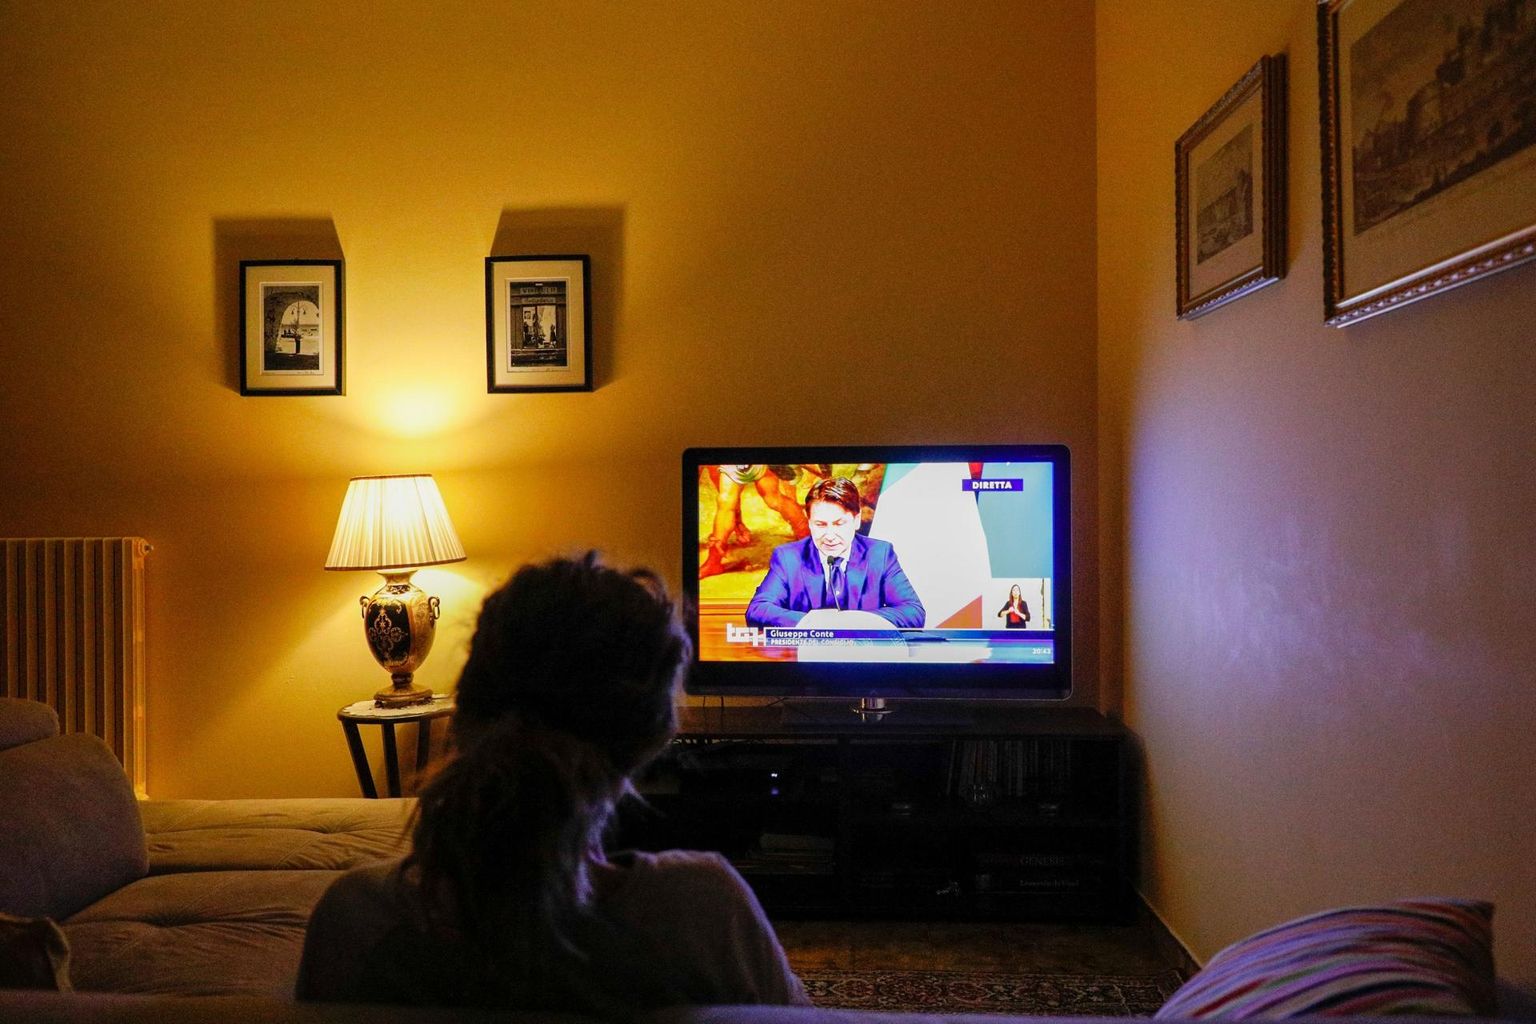 Itaalia peaminister Giuseppe Conte suutis tervishoiukriisi ajal naelutada inimesed telerite ette oma kõnesid kuulama. Nüüd, mil horisondil terendab majanduskriis, tuleb tal senise populaarsuse säilitamiseks telepöördumistes antud lubadused ellu viia.